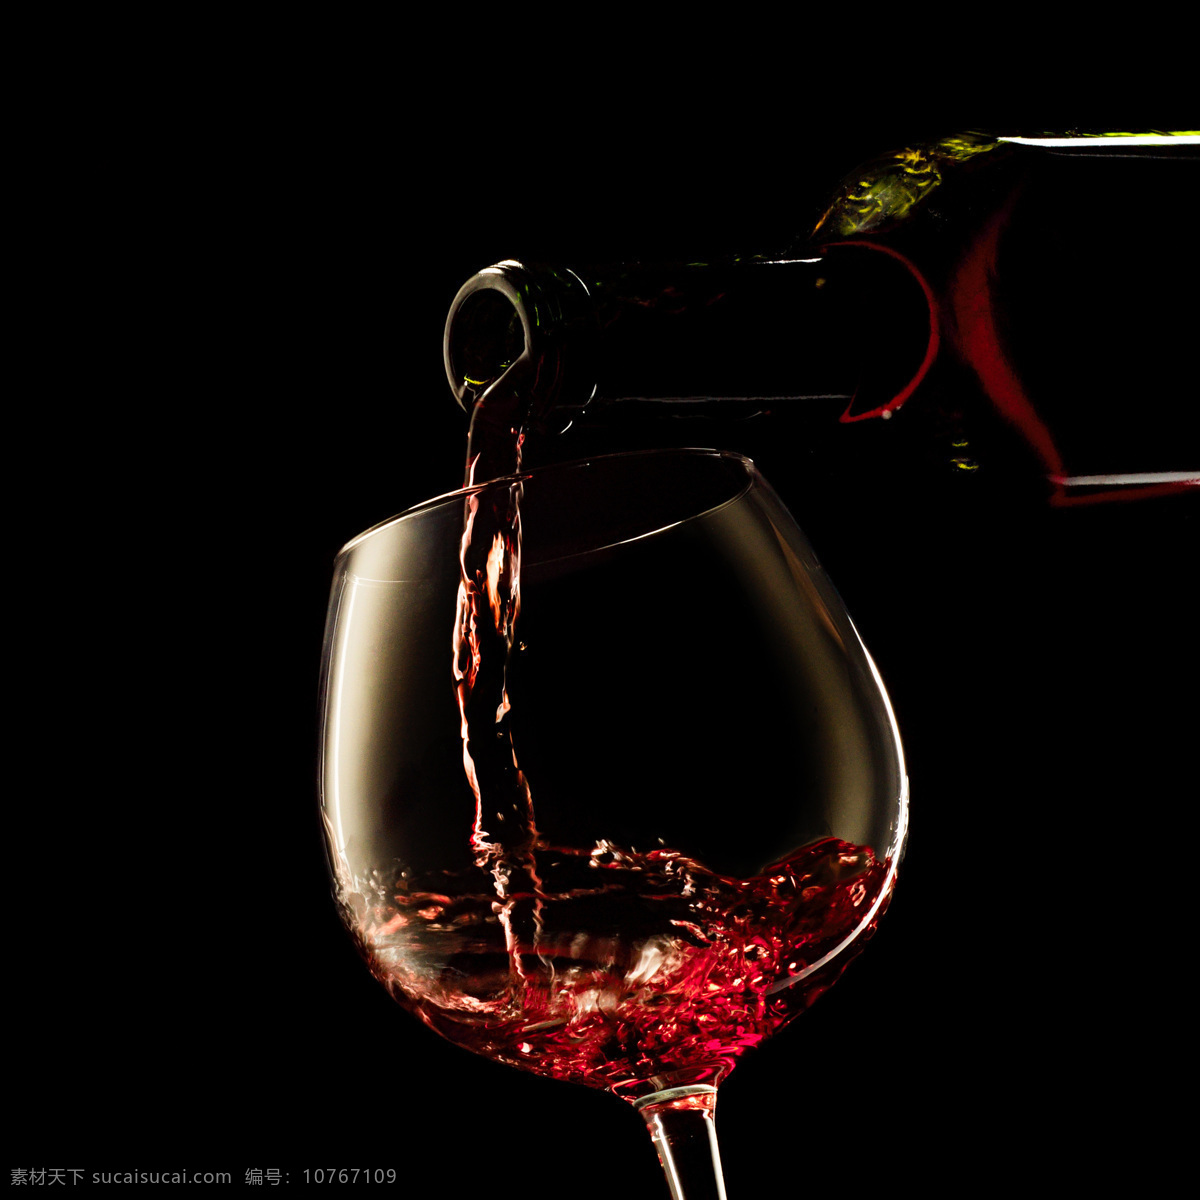 红酒图片素材 红酒 葡萄酒 洋酒 美酒 酒瓶 玻璃杯子 酒水 酒杯 高脚杯 酒类图片 餐饮美食